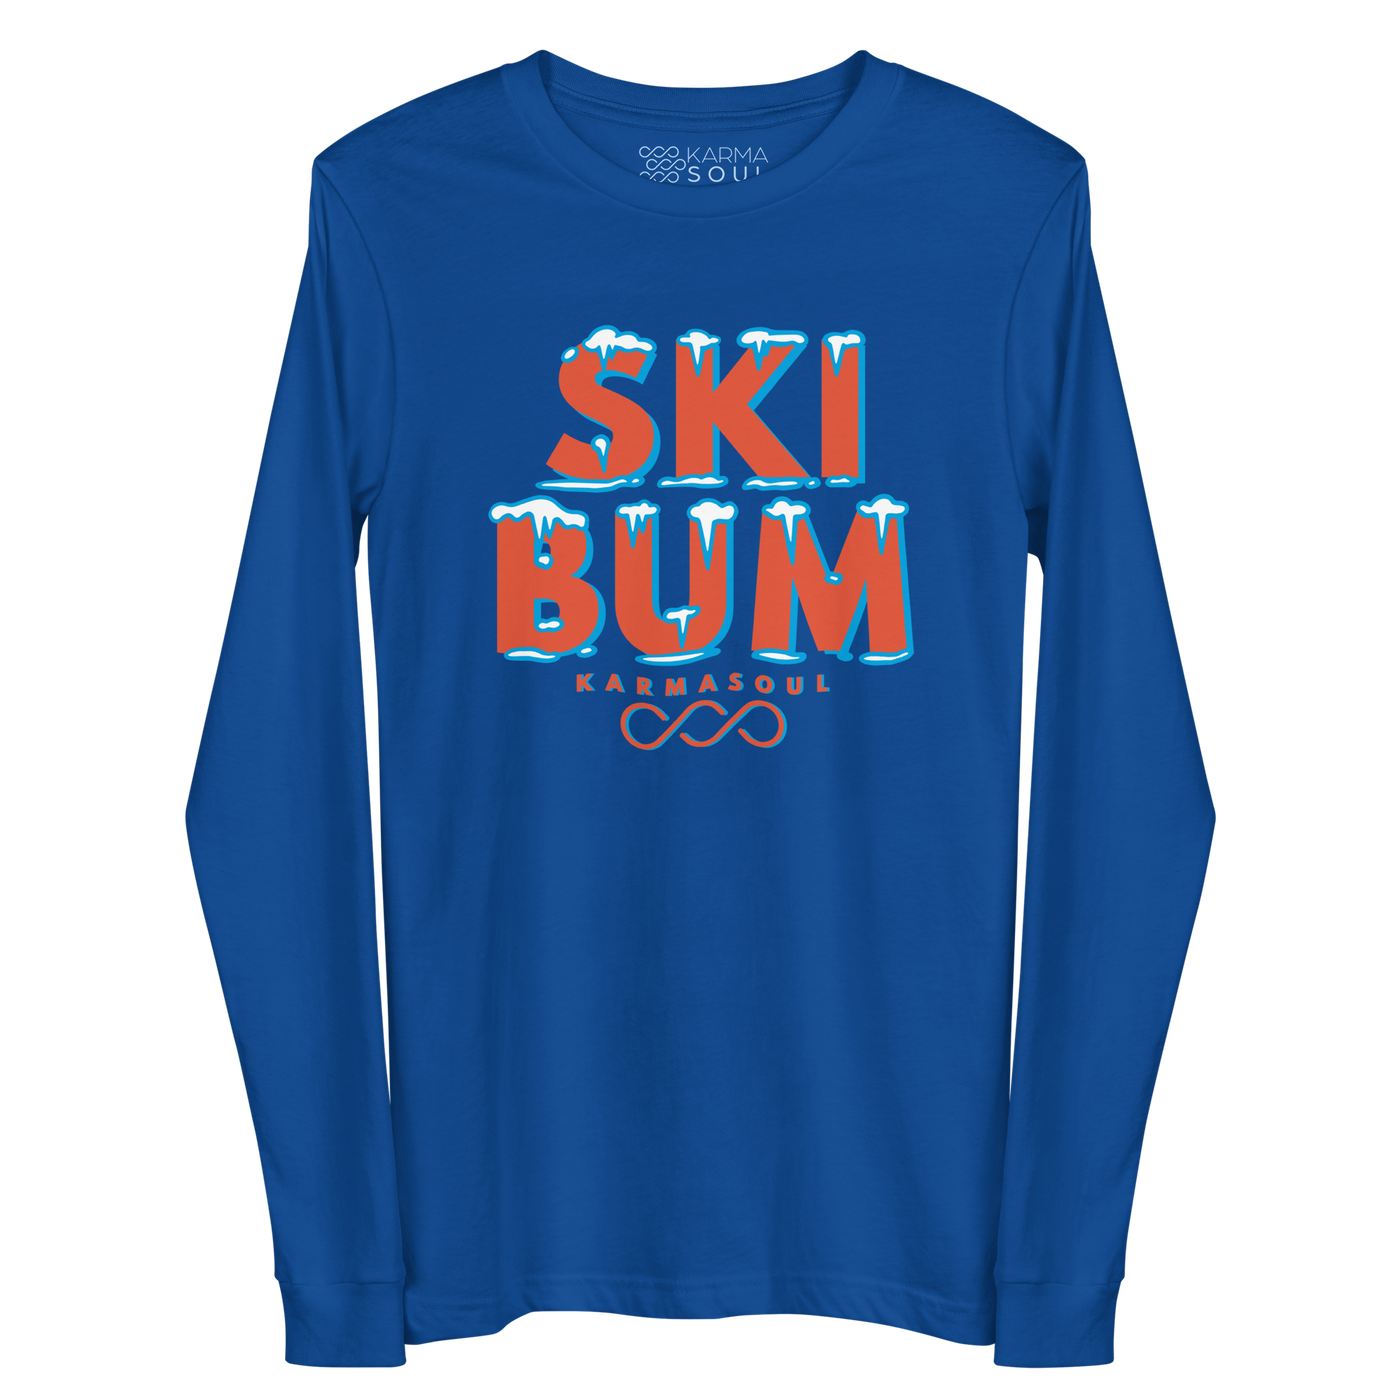 Ski Bum Women's Tee